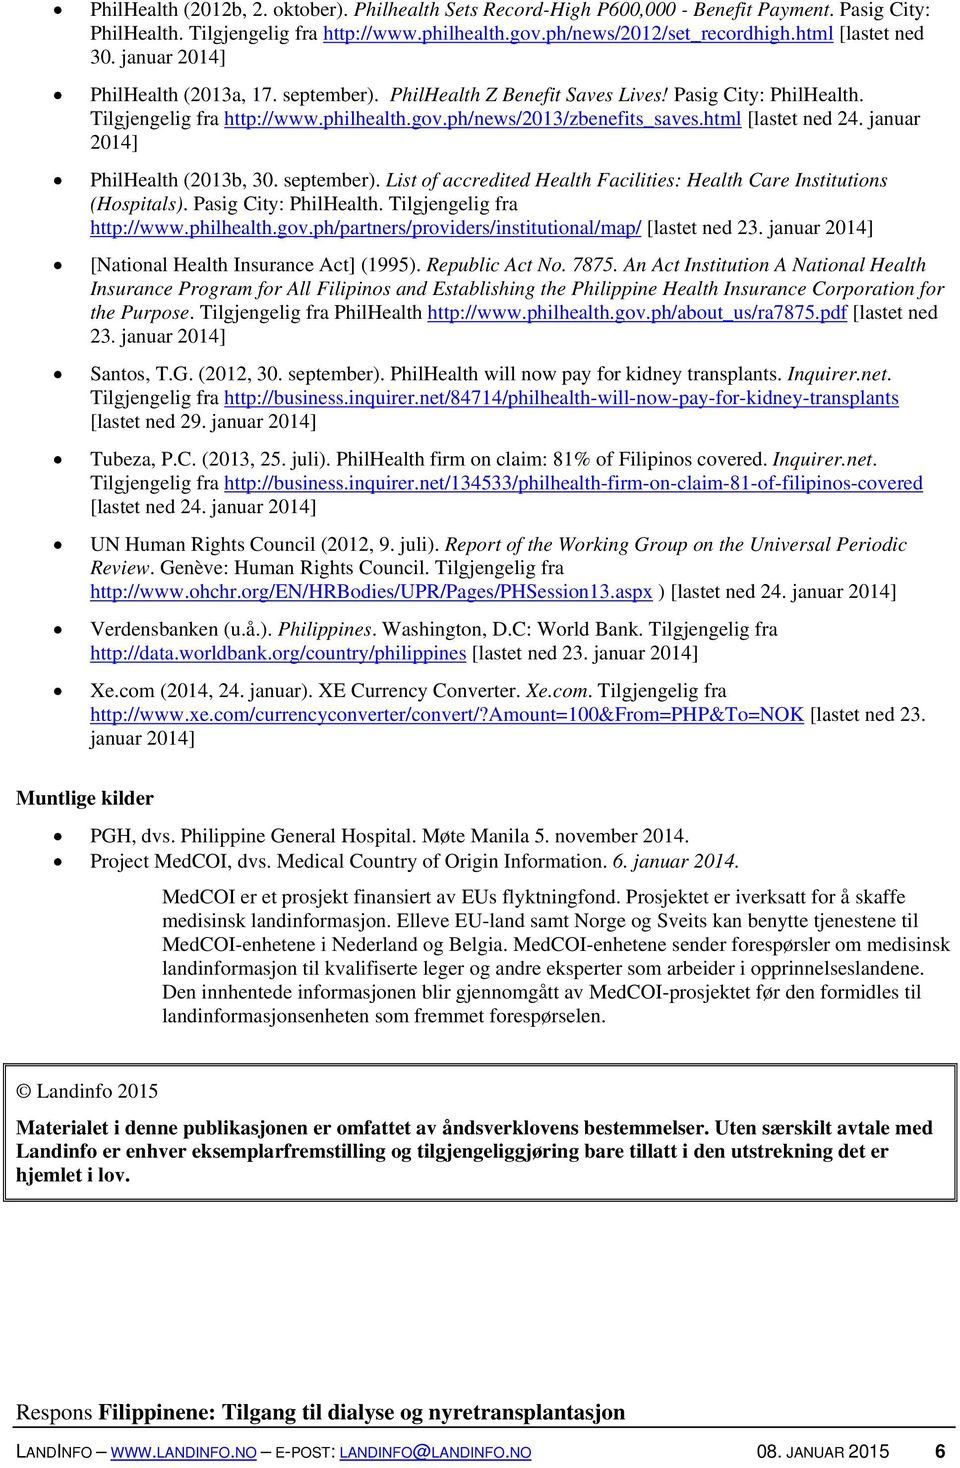 html [lastet ned 24. januar 2014] PhilHealth (2013b, 30. september). List of accredited Health Facilities: Health Care Institutions (Hospitals). Pasig City: PhilHealth. Tilgjengelig fra http://www.